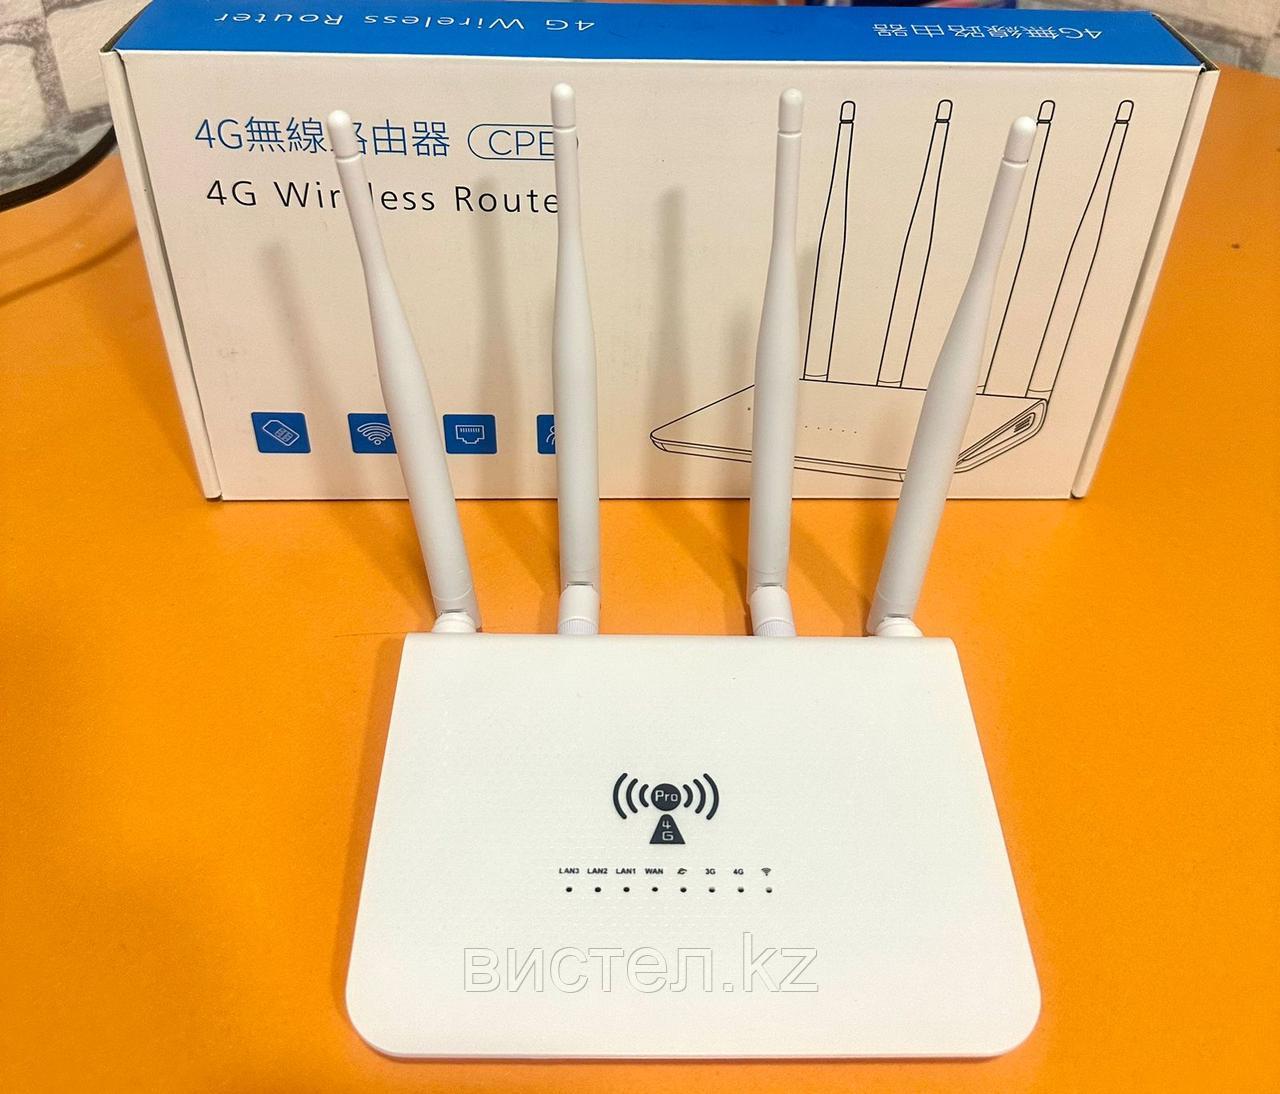 4GUKO E610, 3G/4G/LTE модем и wi-fi роутер.